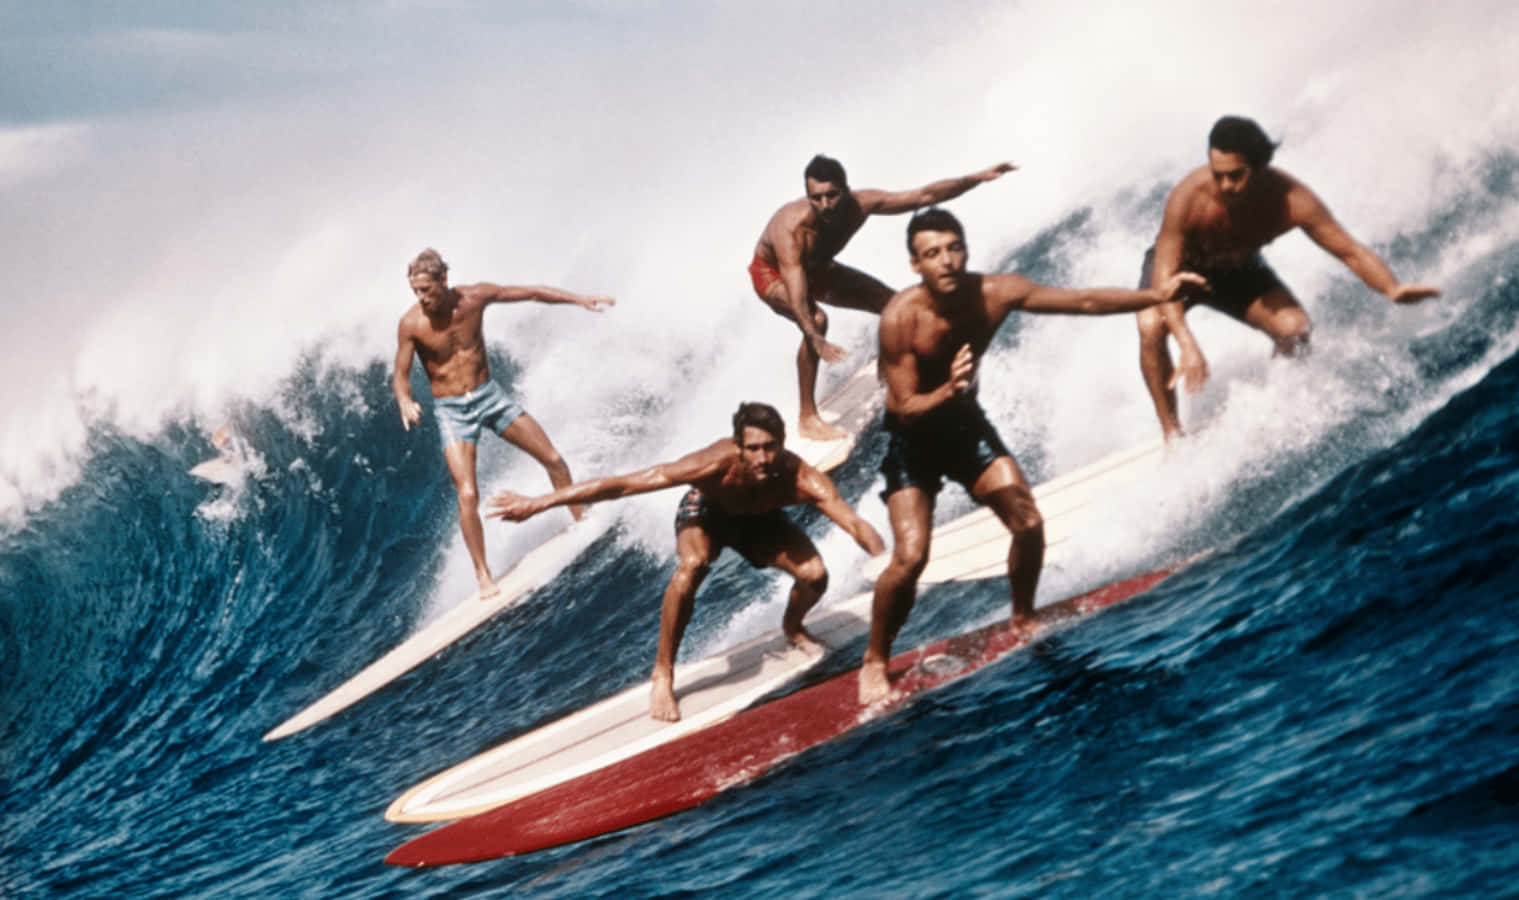 Einegruppe Von Surfern Reitet Auf Surfbrettern Eine Welle. Wallpaper